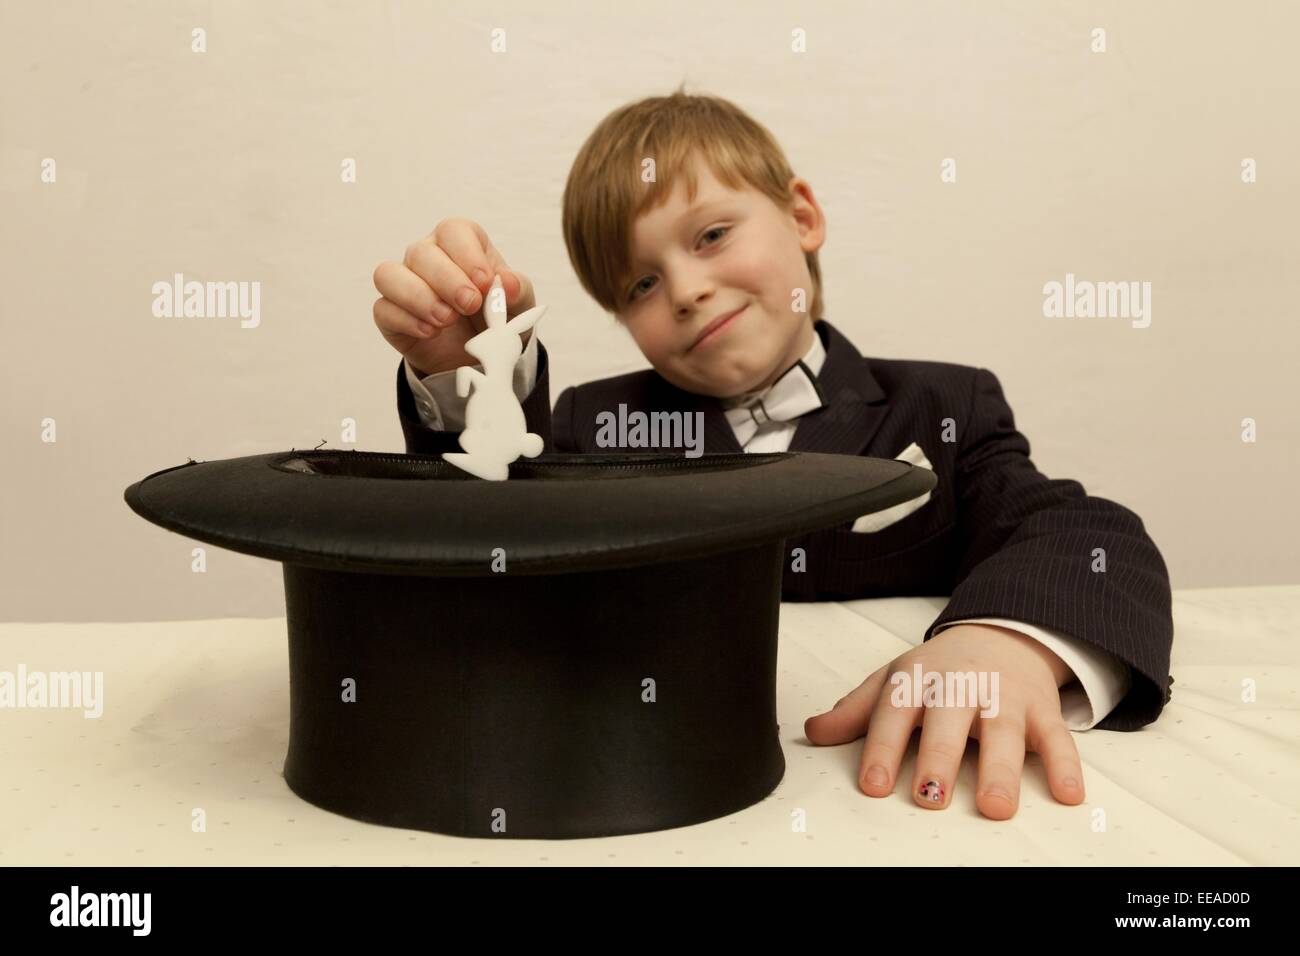 Jeune garçon habillé en magicien tirant un lapin de son chapeau haut de forme Banque D'Images